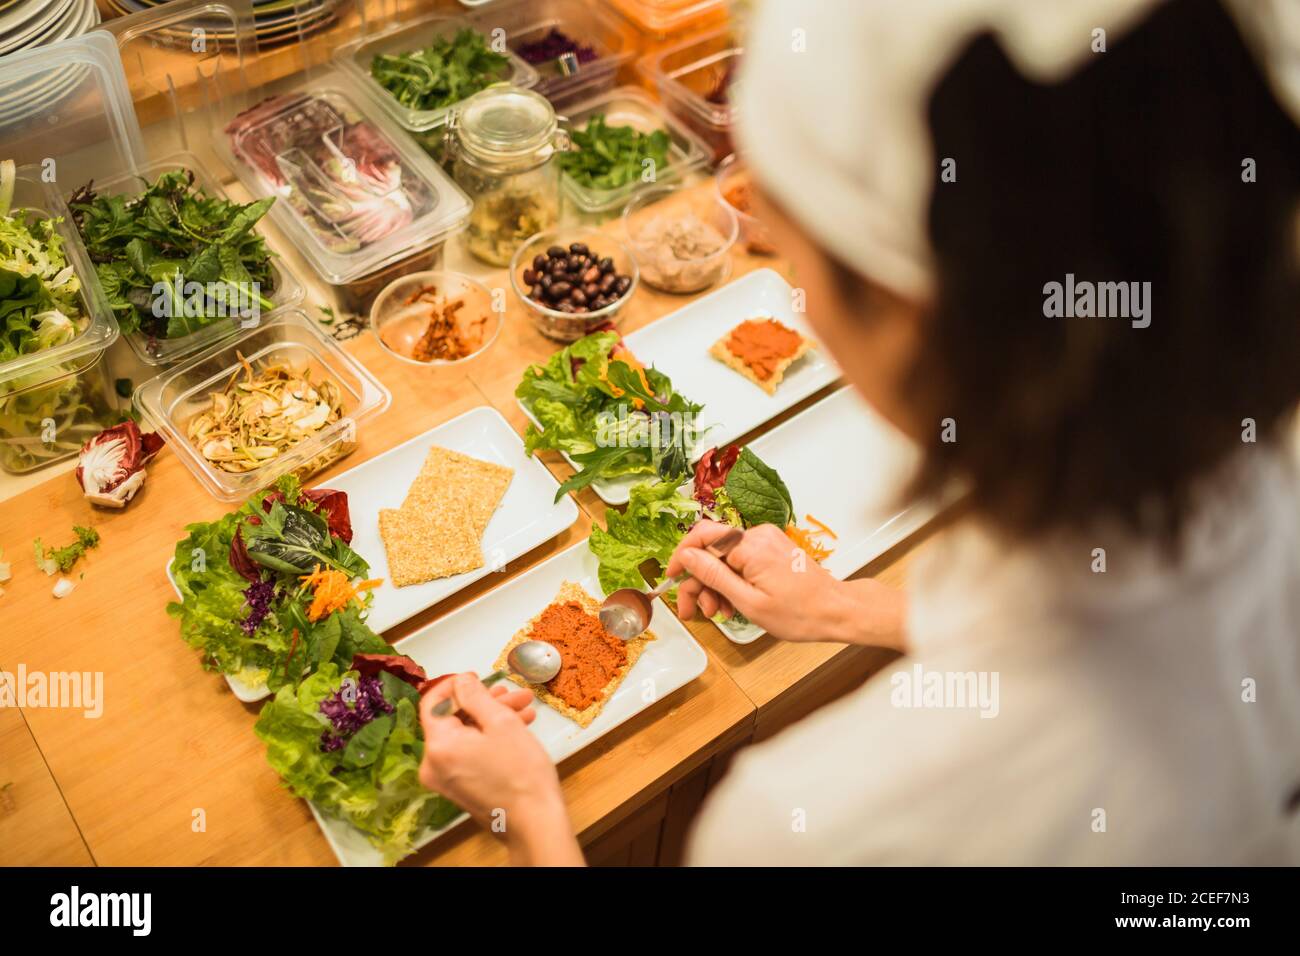 Rückansicht einer unkenntlichen Frau, die Gerichte mit Kräutern und Snacks serviert. Stockfoto